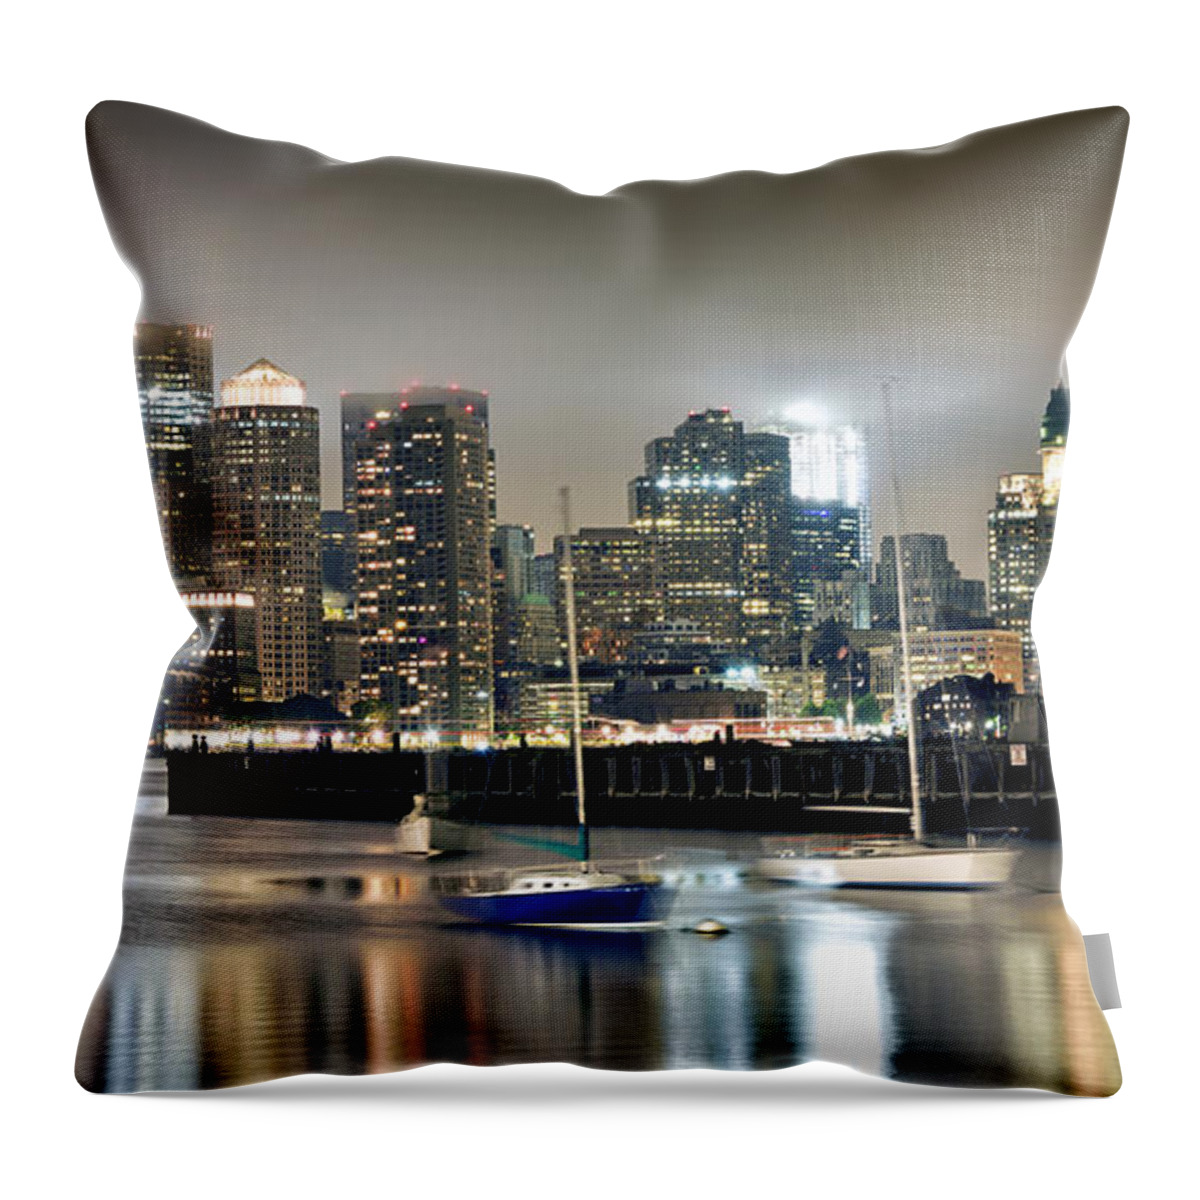 Boston Massachusetts Throw Pillow featuring the photograph Boston Massachusetts by Brendan Reals